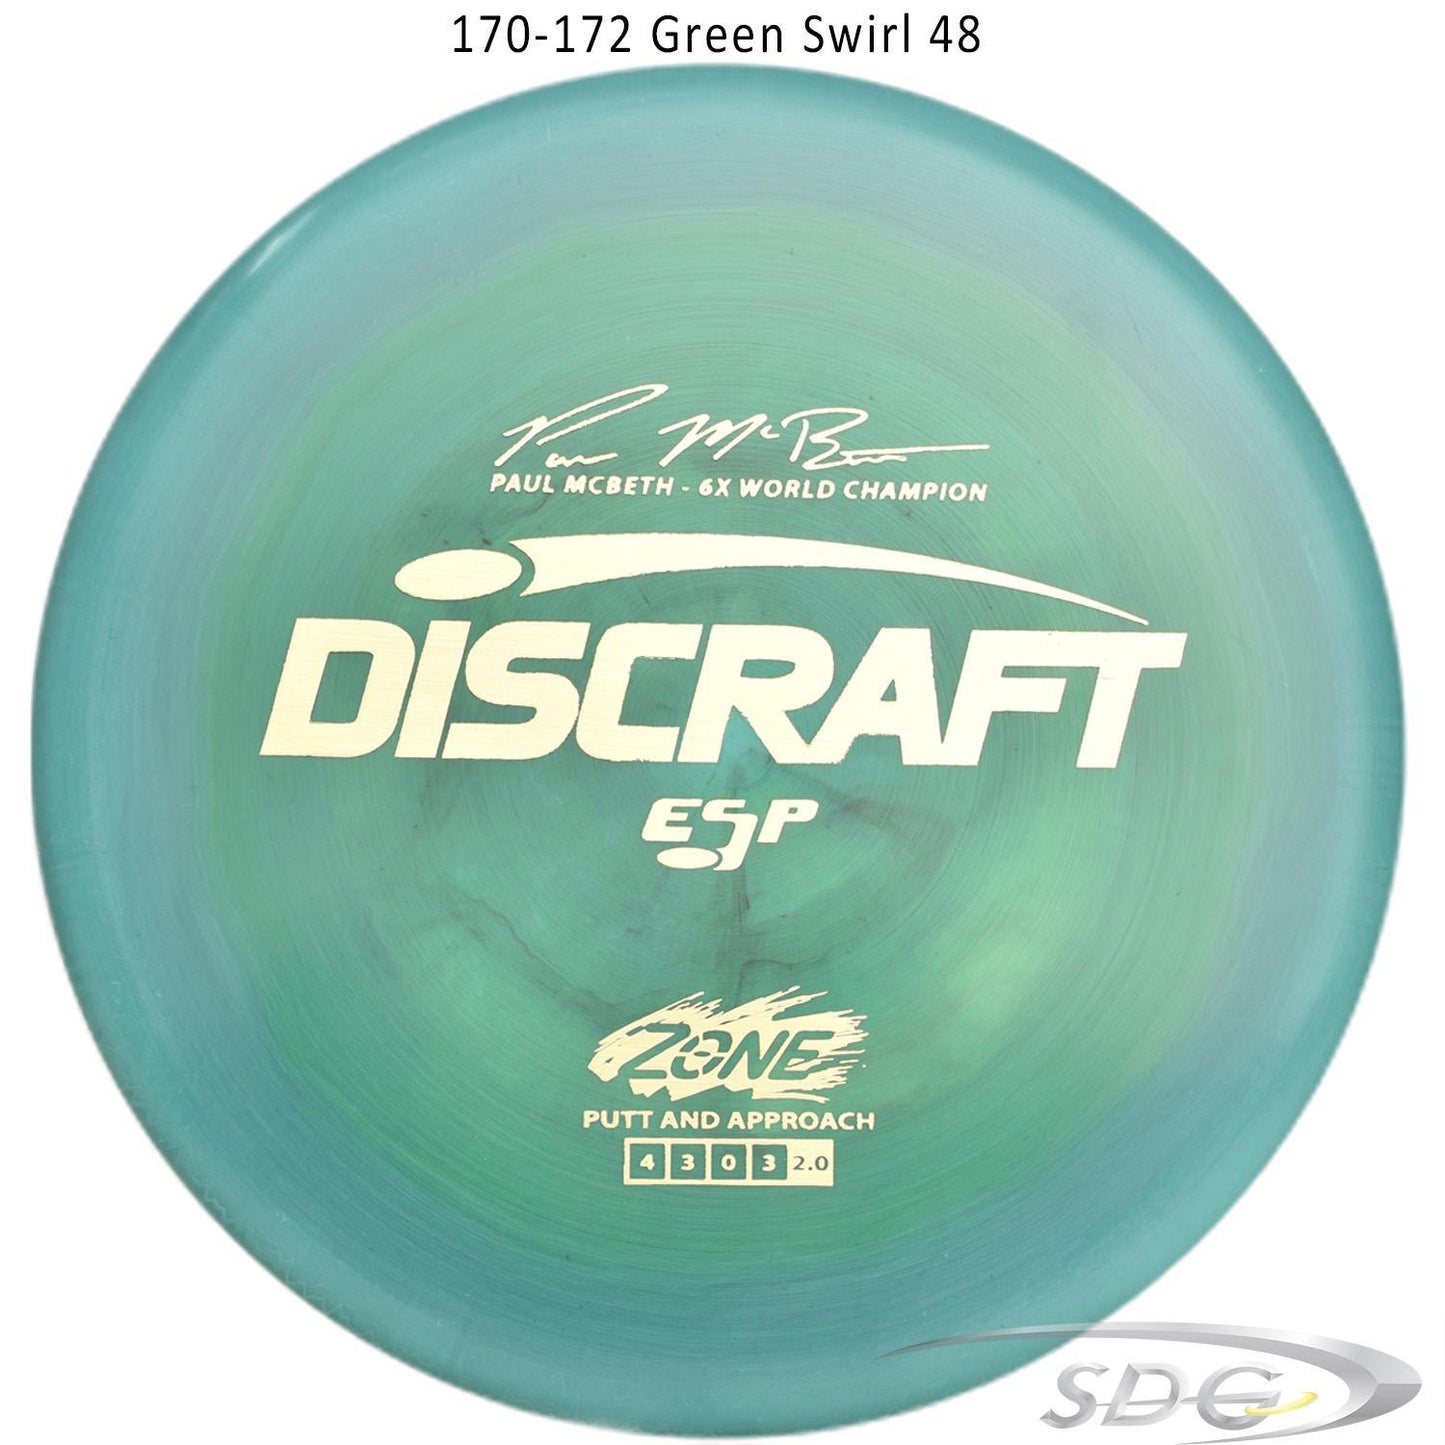 discraft-esp-zone-6x-paul-mcbeth-signature-series-disc-golf-putter 170-172 Green Swirl 48